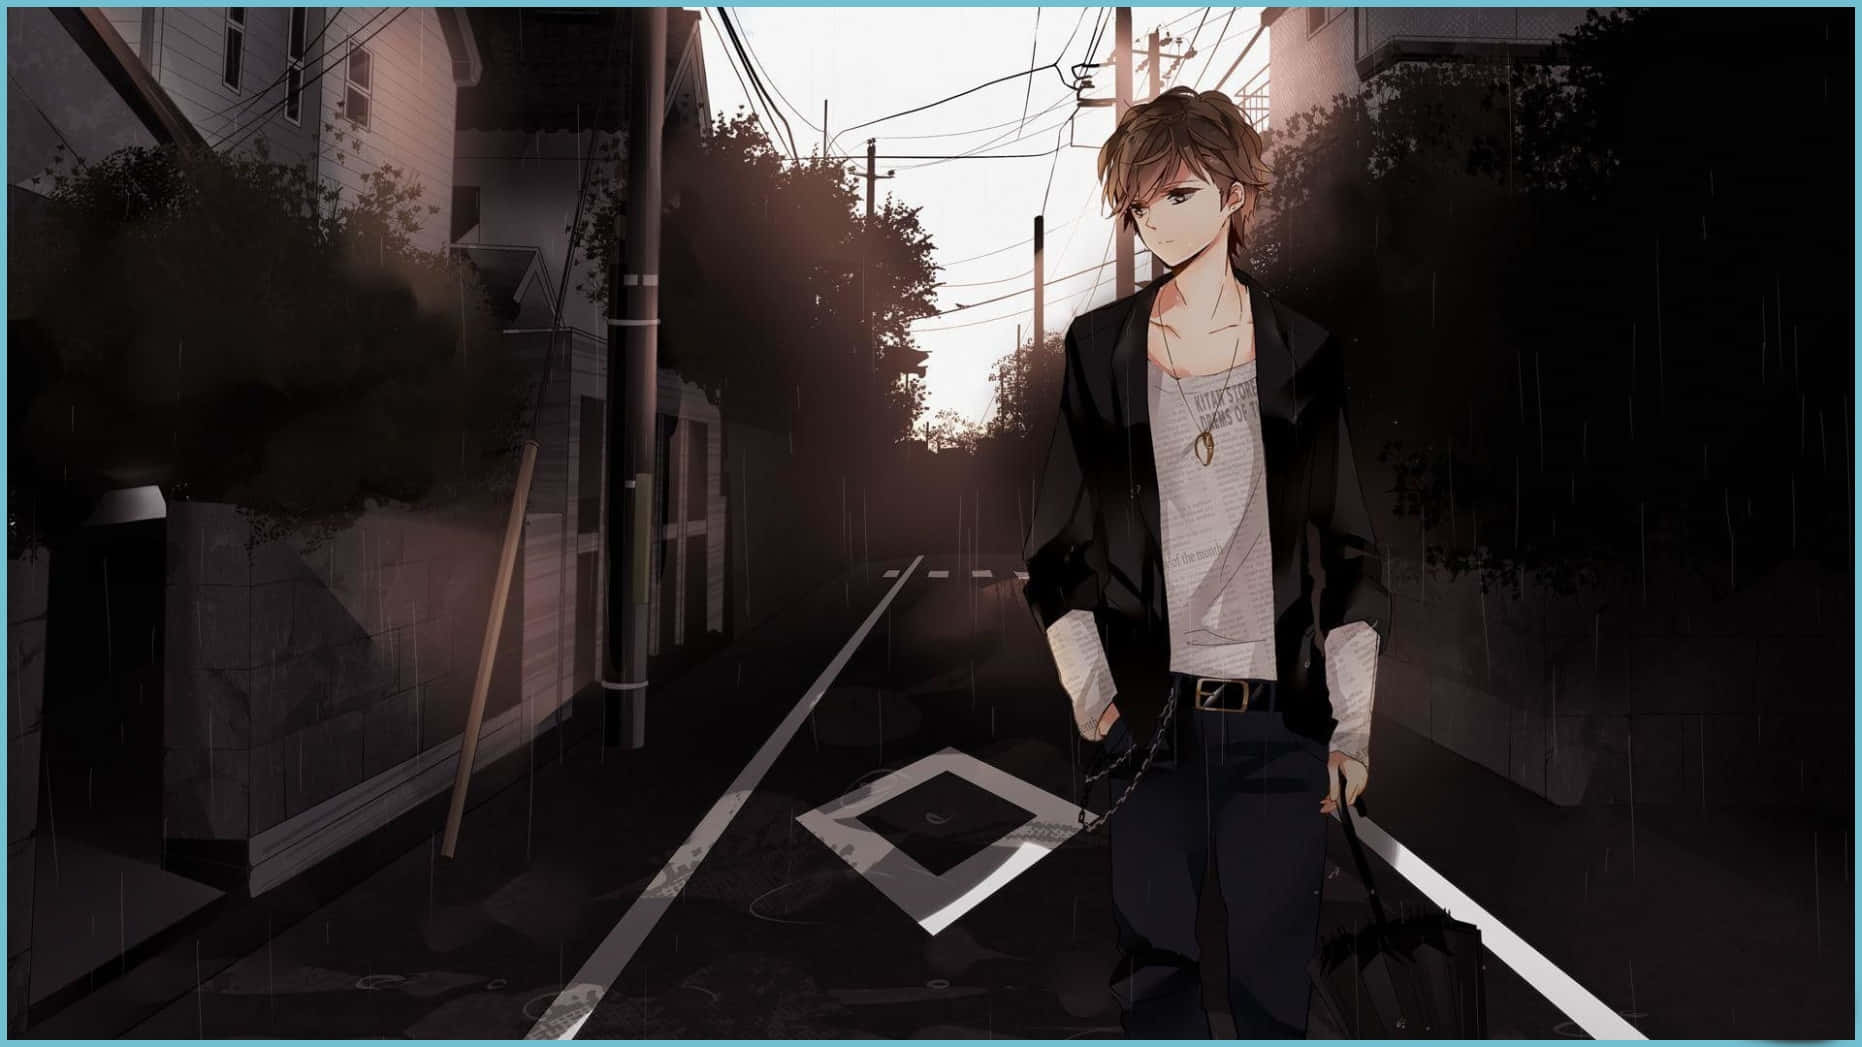 Sad Depressing Anime Teenage Boy Walking Street